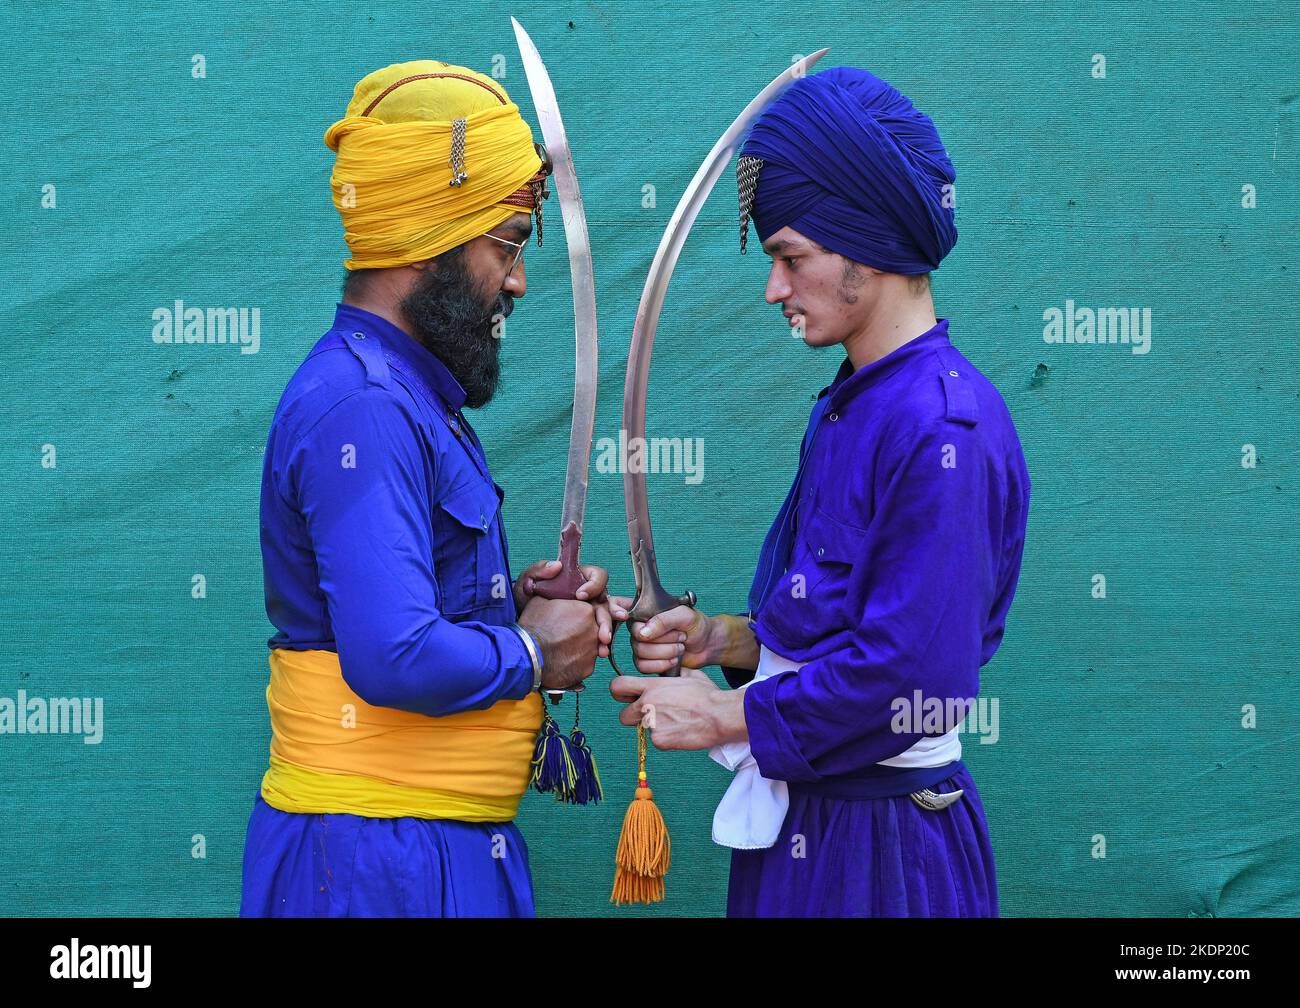 Nihangs oder Sikh-Krieger posieren für ein Foto und halten vor der Geburtstagsfeier von Guru Nanak Dev Ji in Mumbai Schwerter. Gatka ist ein Punjabi-Wort, das in Holzstäbchen übersetzt wird, die anstelle von Schwertern verwendet werden. Es verwendet ein Schwert als Hauptwaffe, Unter anderem. Person's spirituellen und physischen Aspekt wird während der Lernphase dieser alten Kunst entwickelt. Gatka wurde ausgiebig von Sikh Krieger verwendet, um sich von den Gräueltaten der Moguln und der britischen Herrscher zu verteidigen. (Foto von Ashish Vaishnav/SOPA Images/Sipa USA) Stockfoto